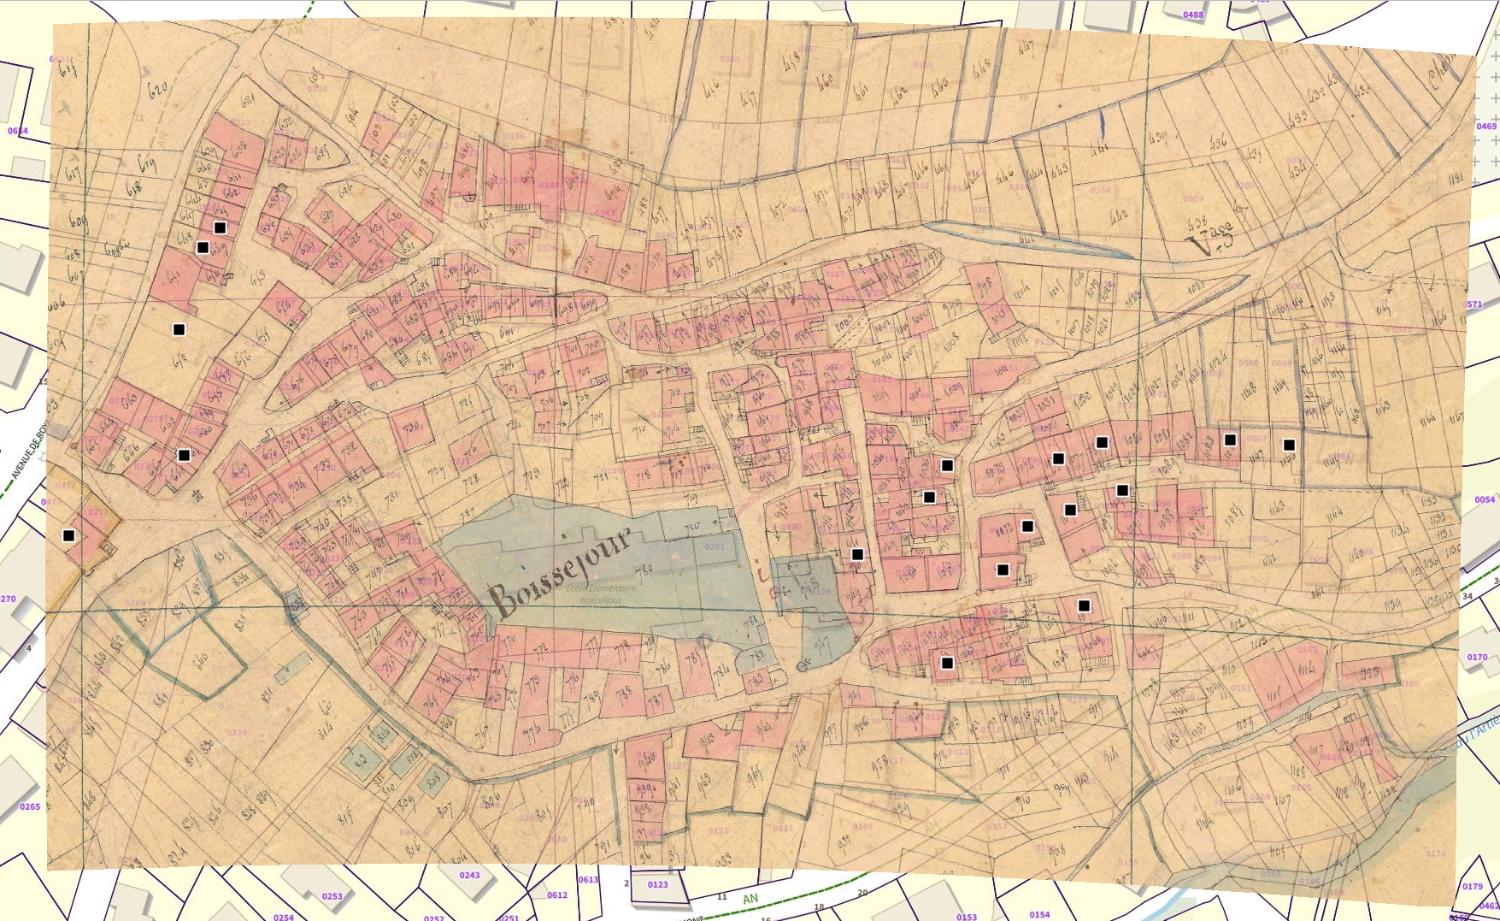 Commune de Ceyrat (Boisséjour) : localisation des maisons vigneronnes (cadastre dit napoléonien, 1831, AD Puy-de-Dôme, 51 Fi 279)